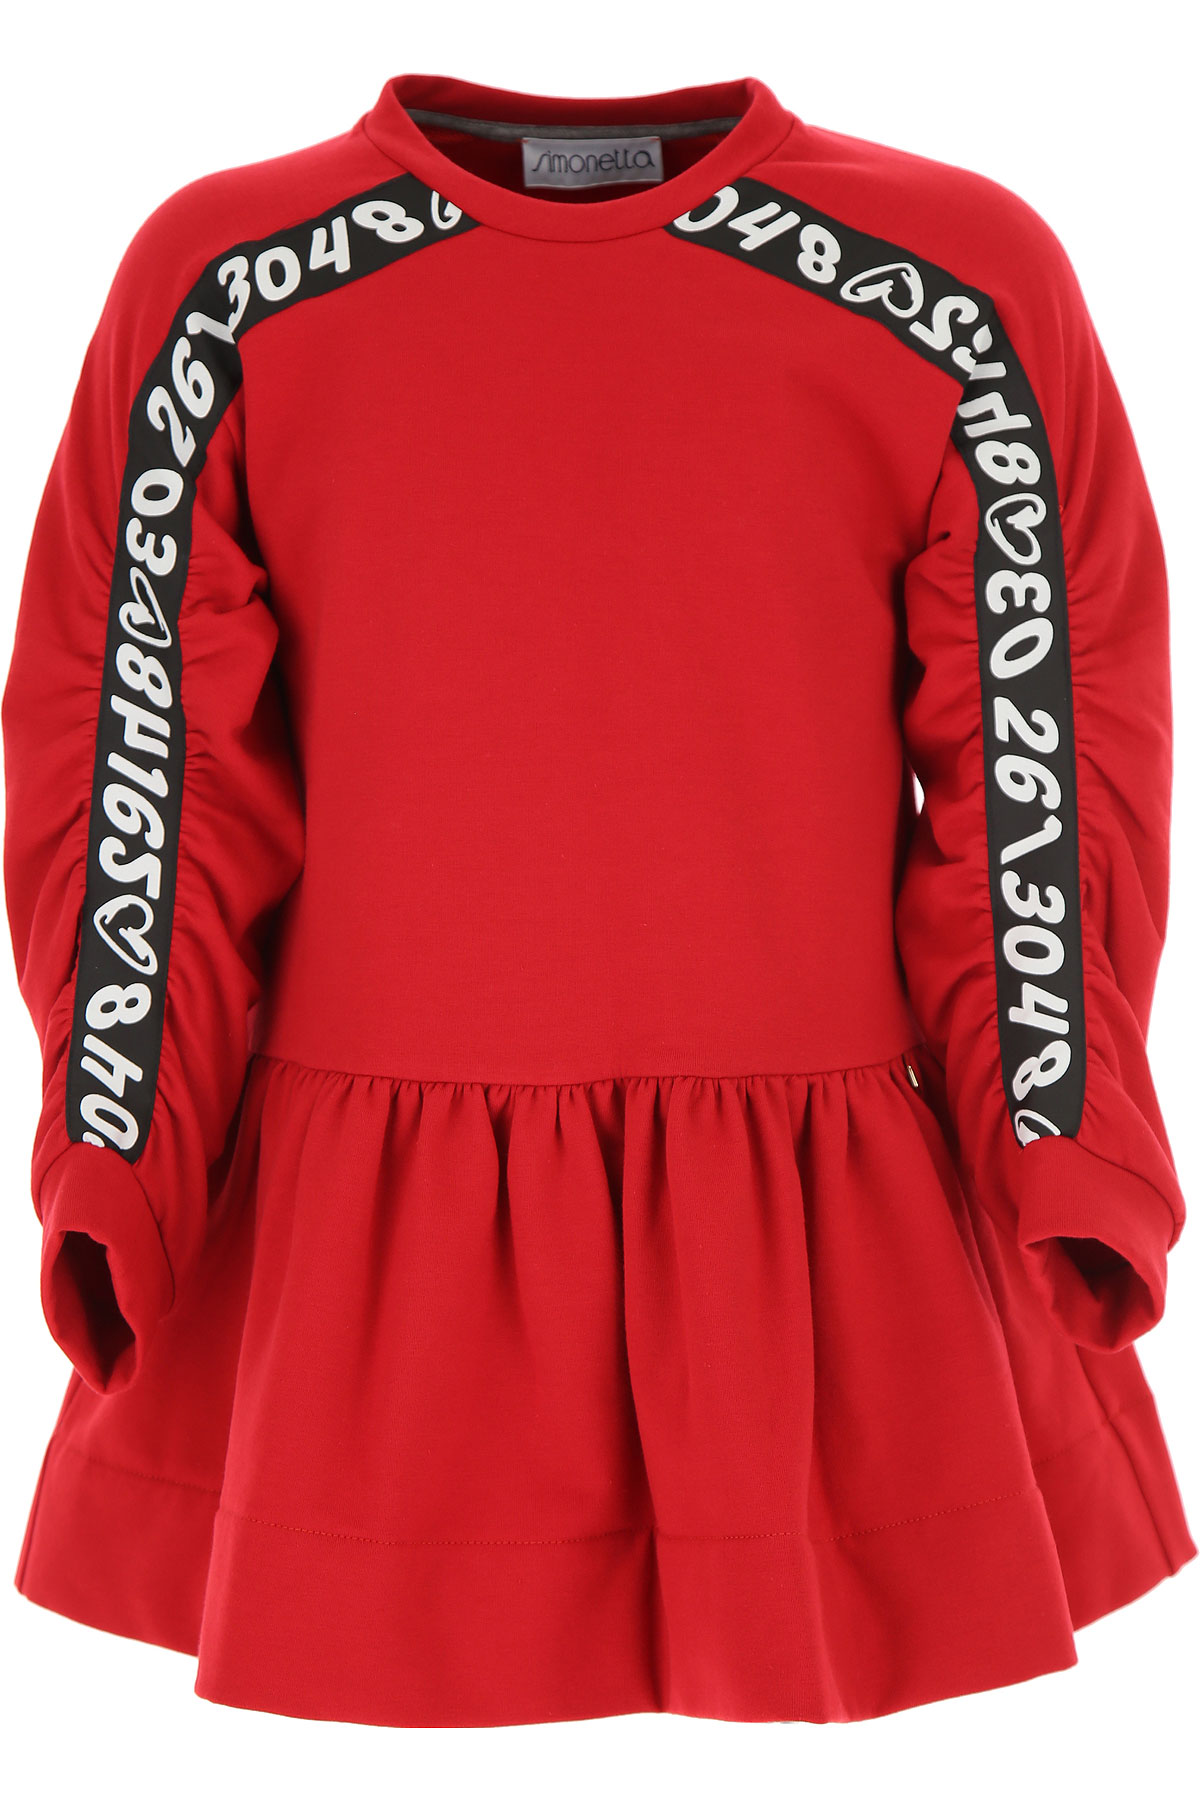 Simonetta Kleid für Mädchen Günstig im Sale, Rot, Baumwolle, 2017, 2Y 4Y 6Y